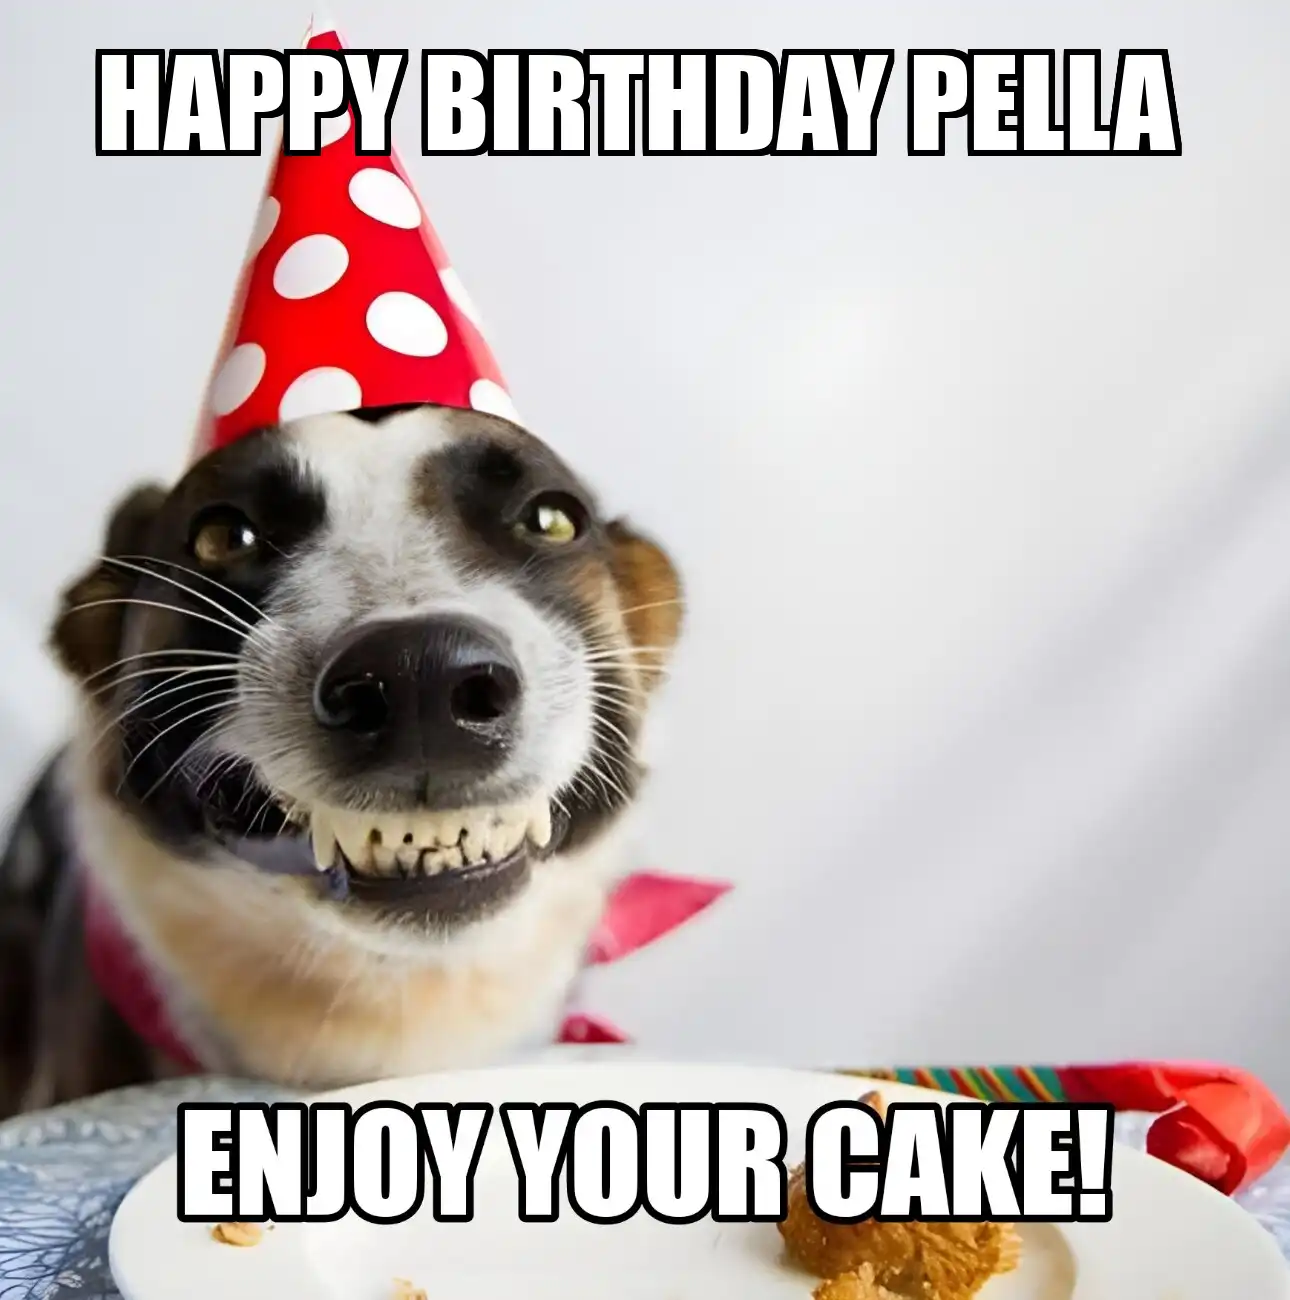 Happy Birthday Pella Enjoy Your Cake Dog Meme